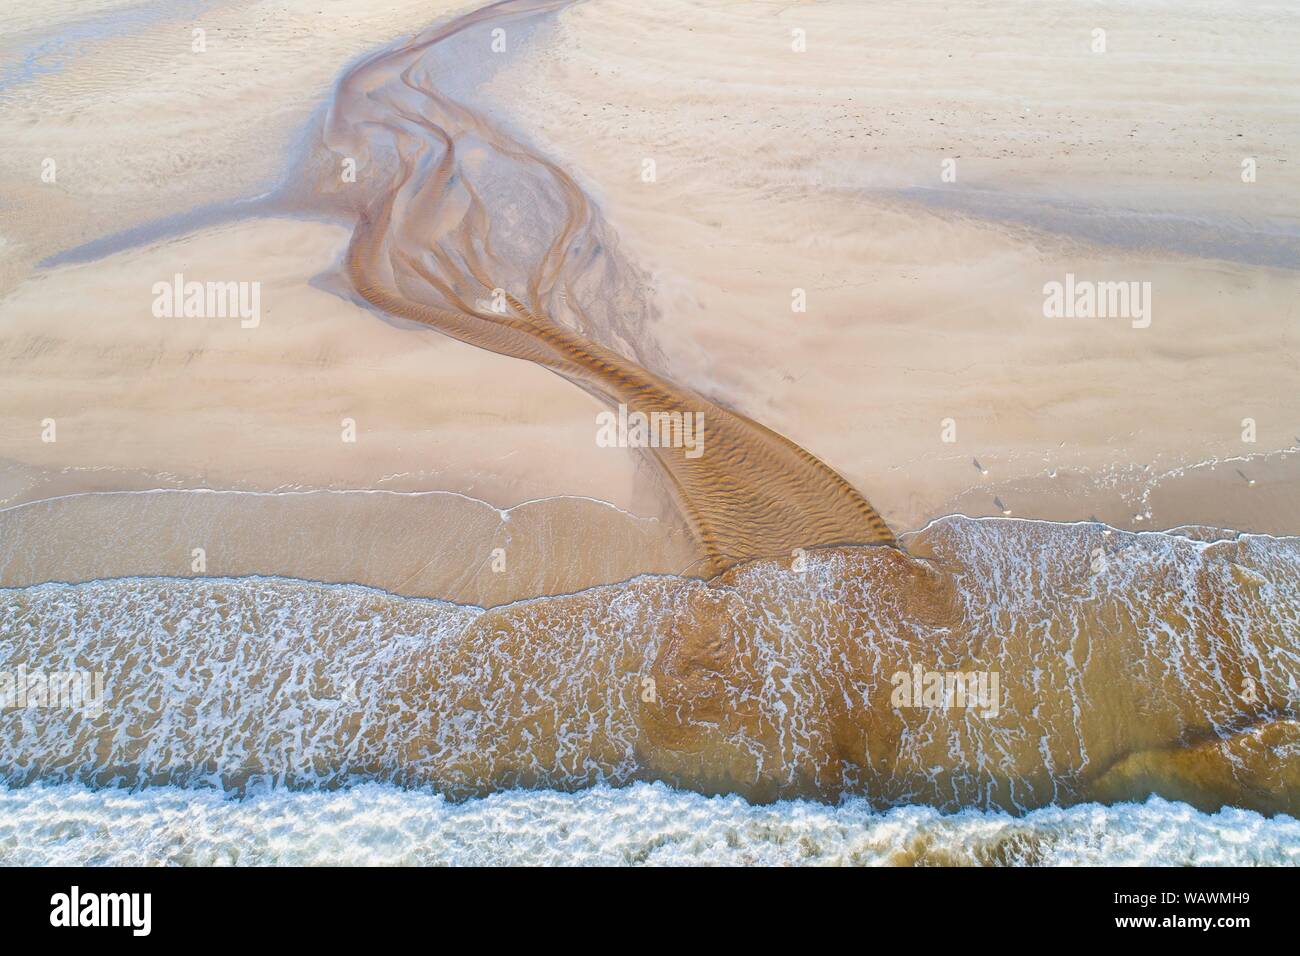 Creek con rossastro acqua ferruginosa scorre su di una spiaggia di sabbia nel mare, vicino a Stornoway, isola di Lewis e Harris Isola, Scozia, Gran Bretagna. Foto Stock